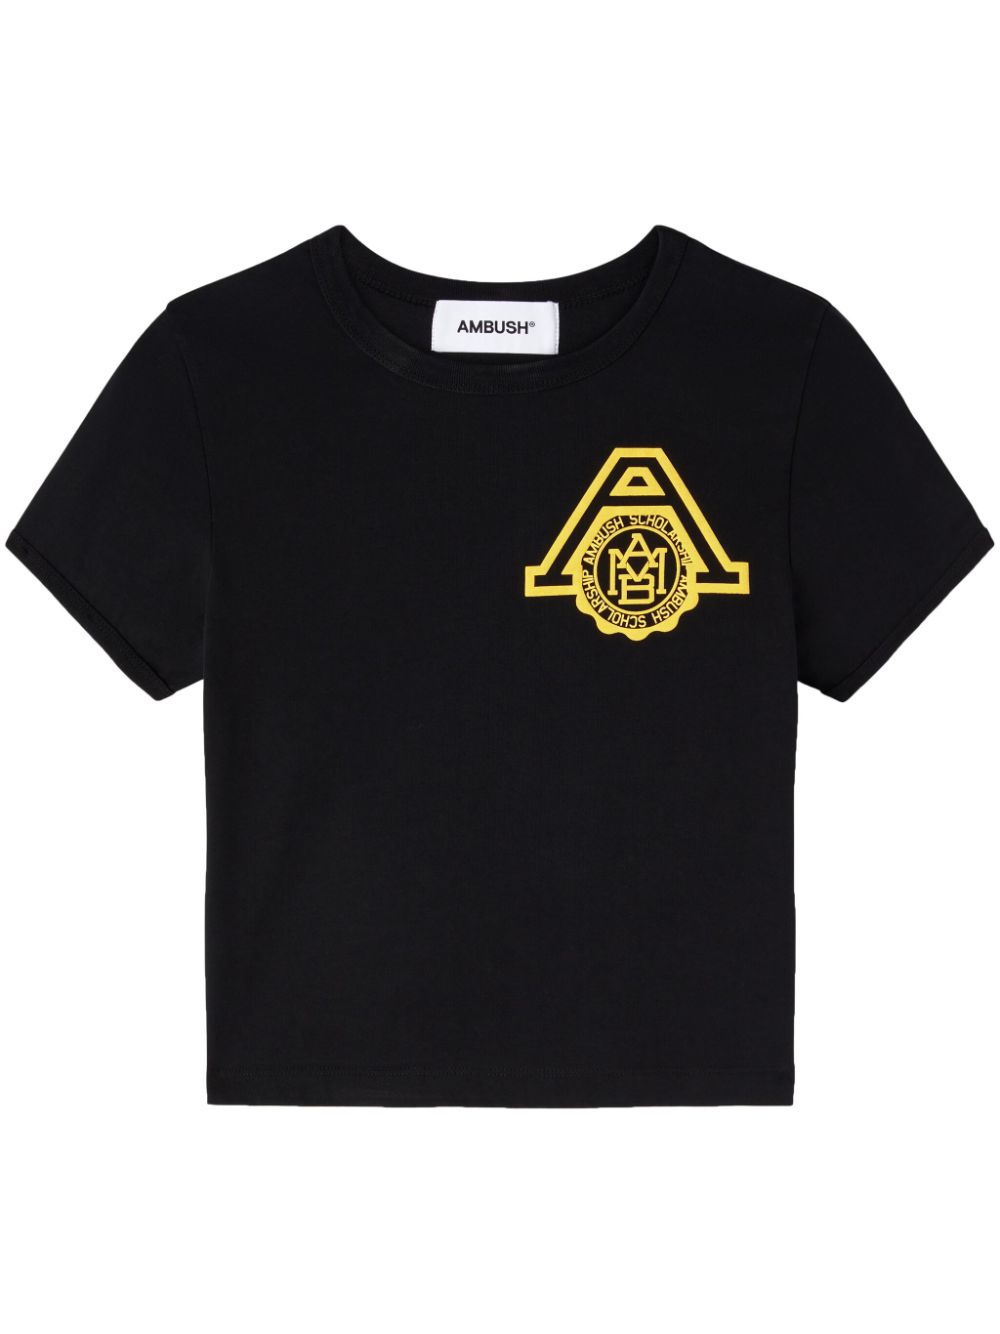 AMBUSH Scholarship organic cotton T-shirt - Black von AMBUSH